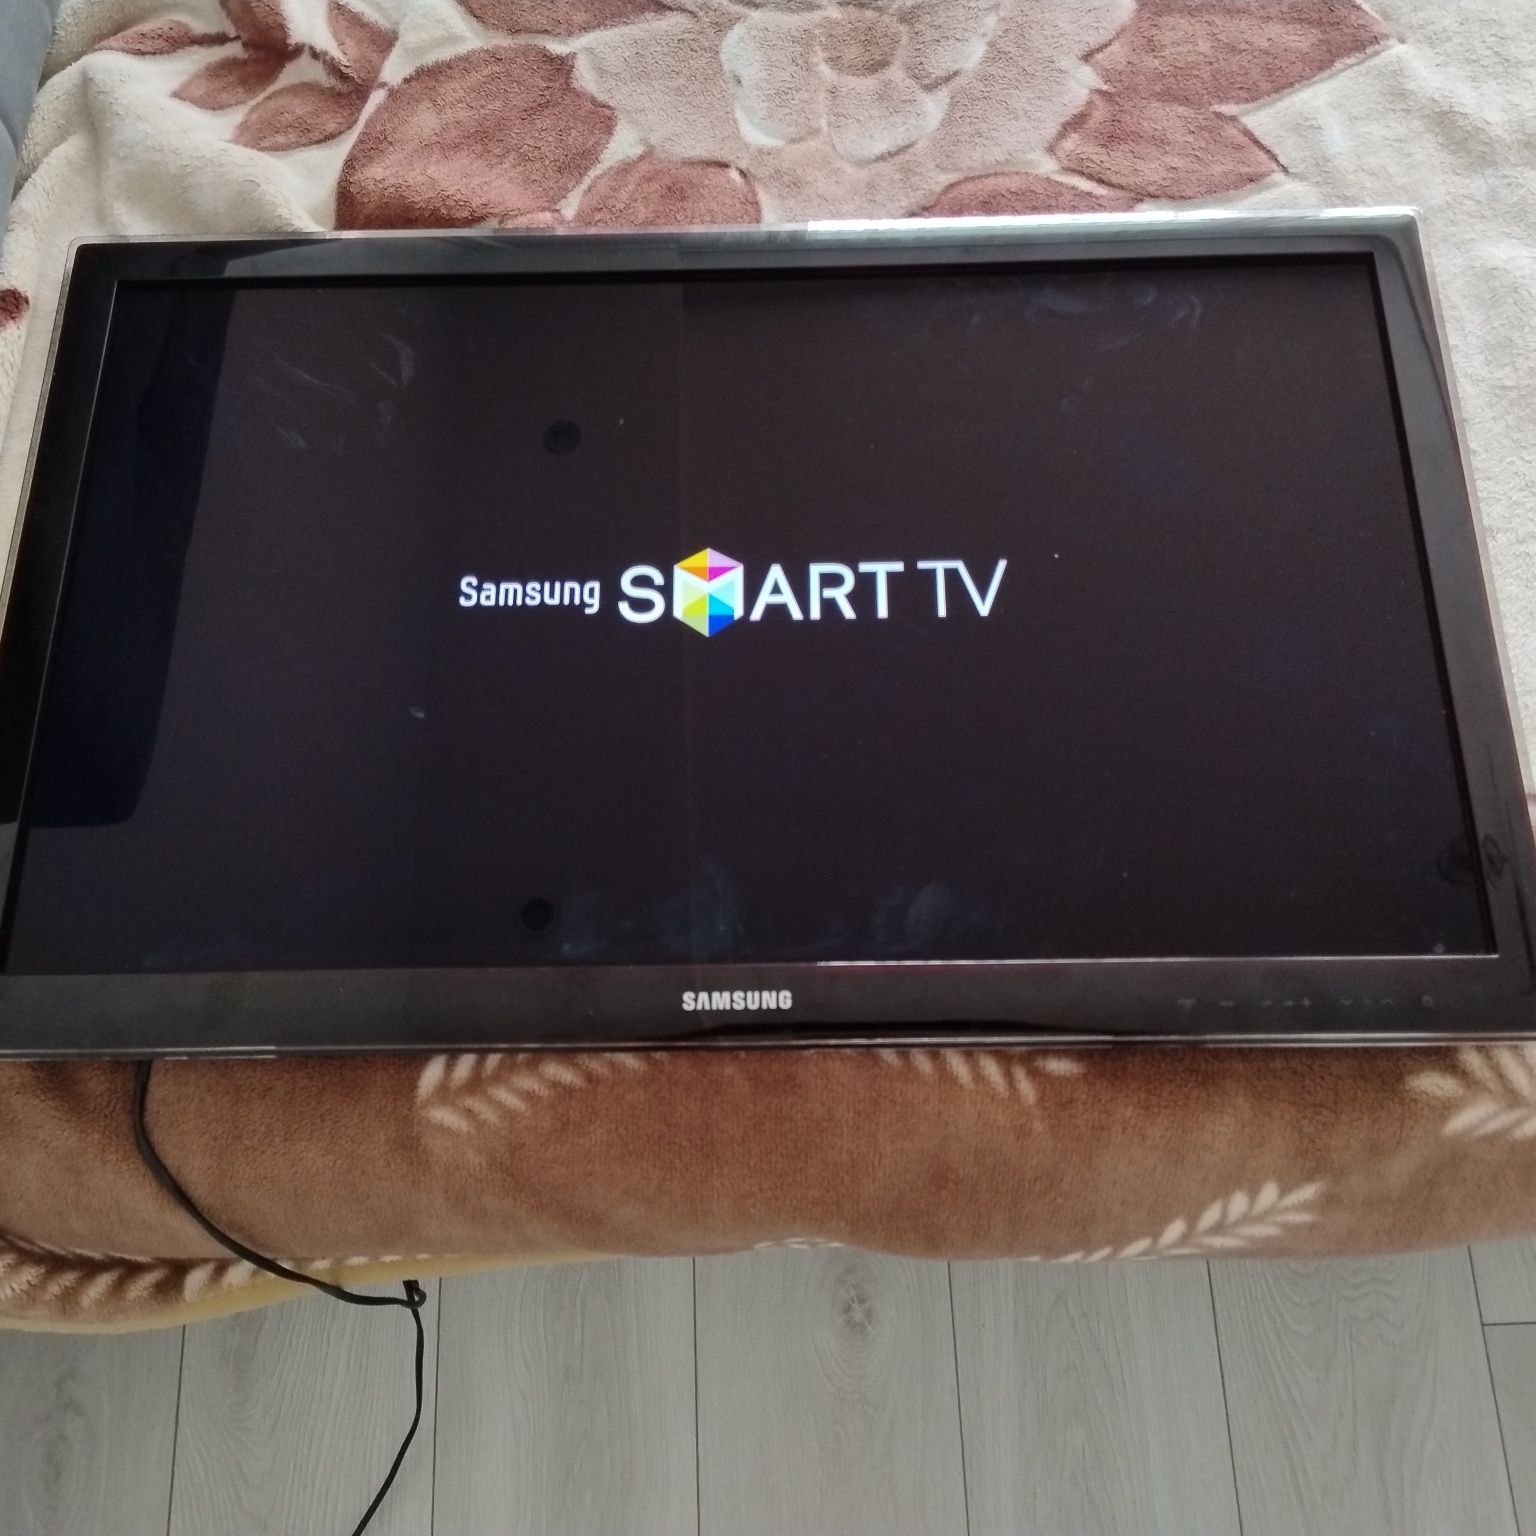 Samsung UE32D5500 Smart TV Problem